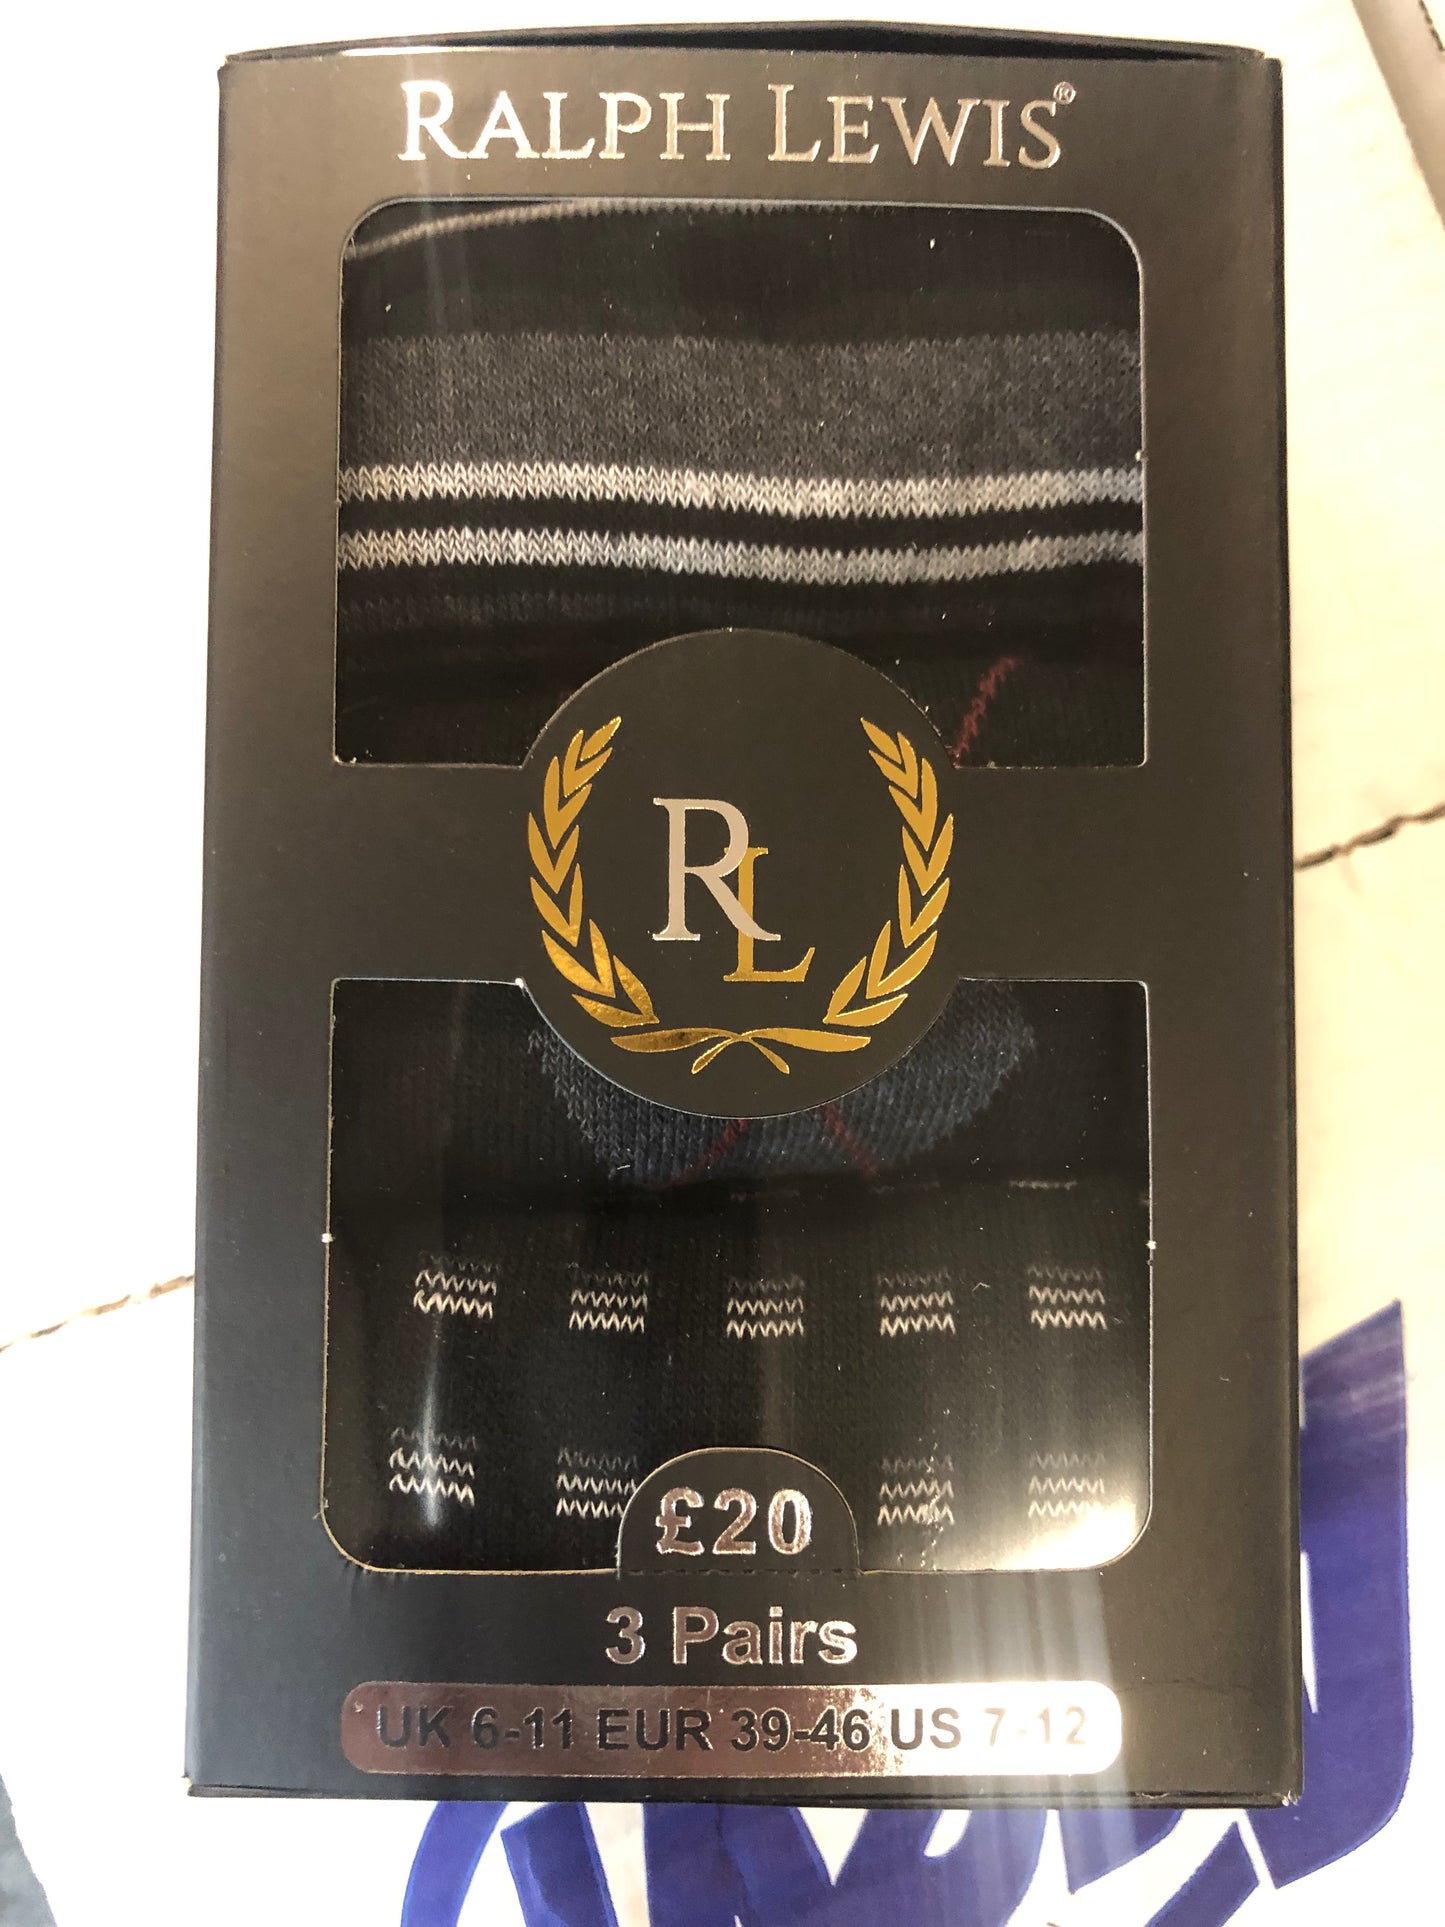 RALPH LEWIS men’s socks 3pk size 6-11